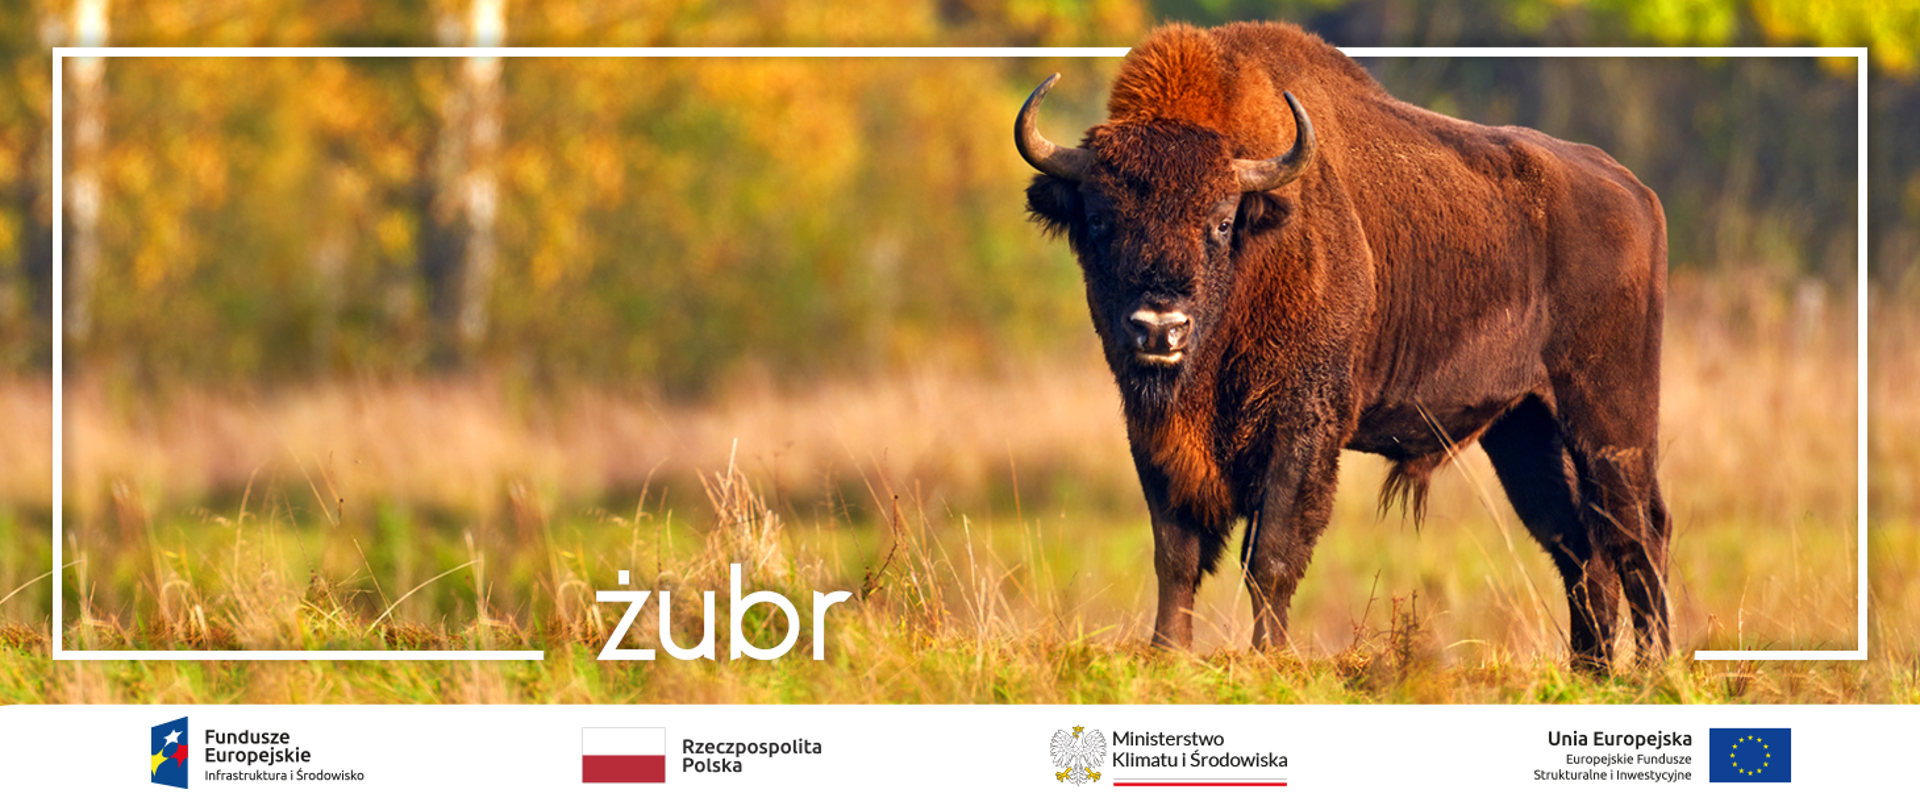  Kompleksowa ochrona żubra w Polsce oraz Rozszerzenie działań Bazy Obsługi Żubrów